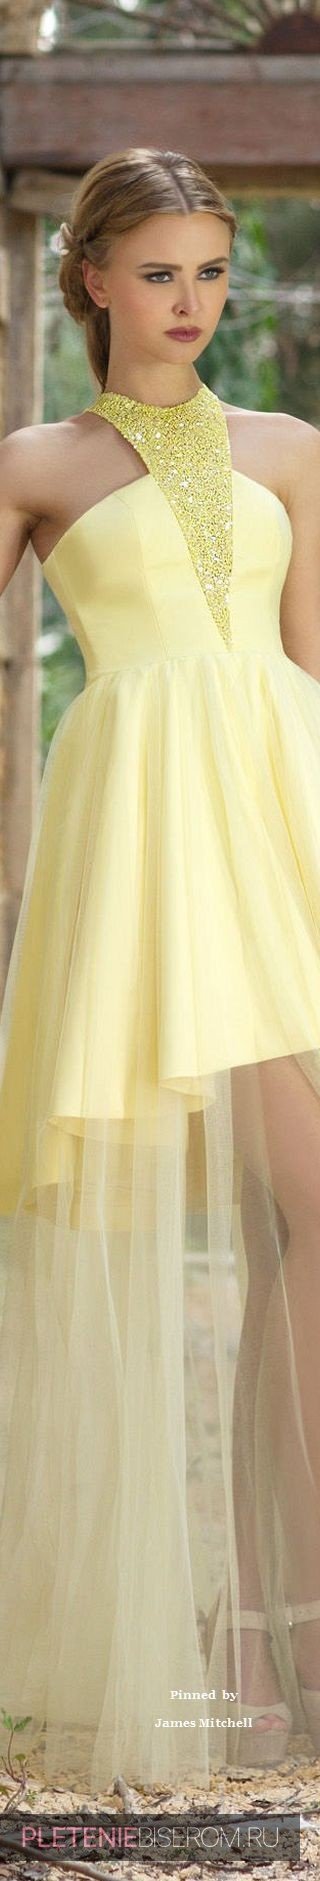 Желтое платье с вставками из бисера